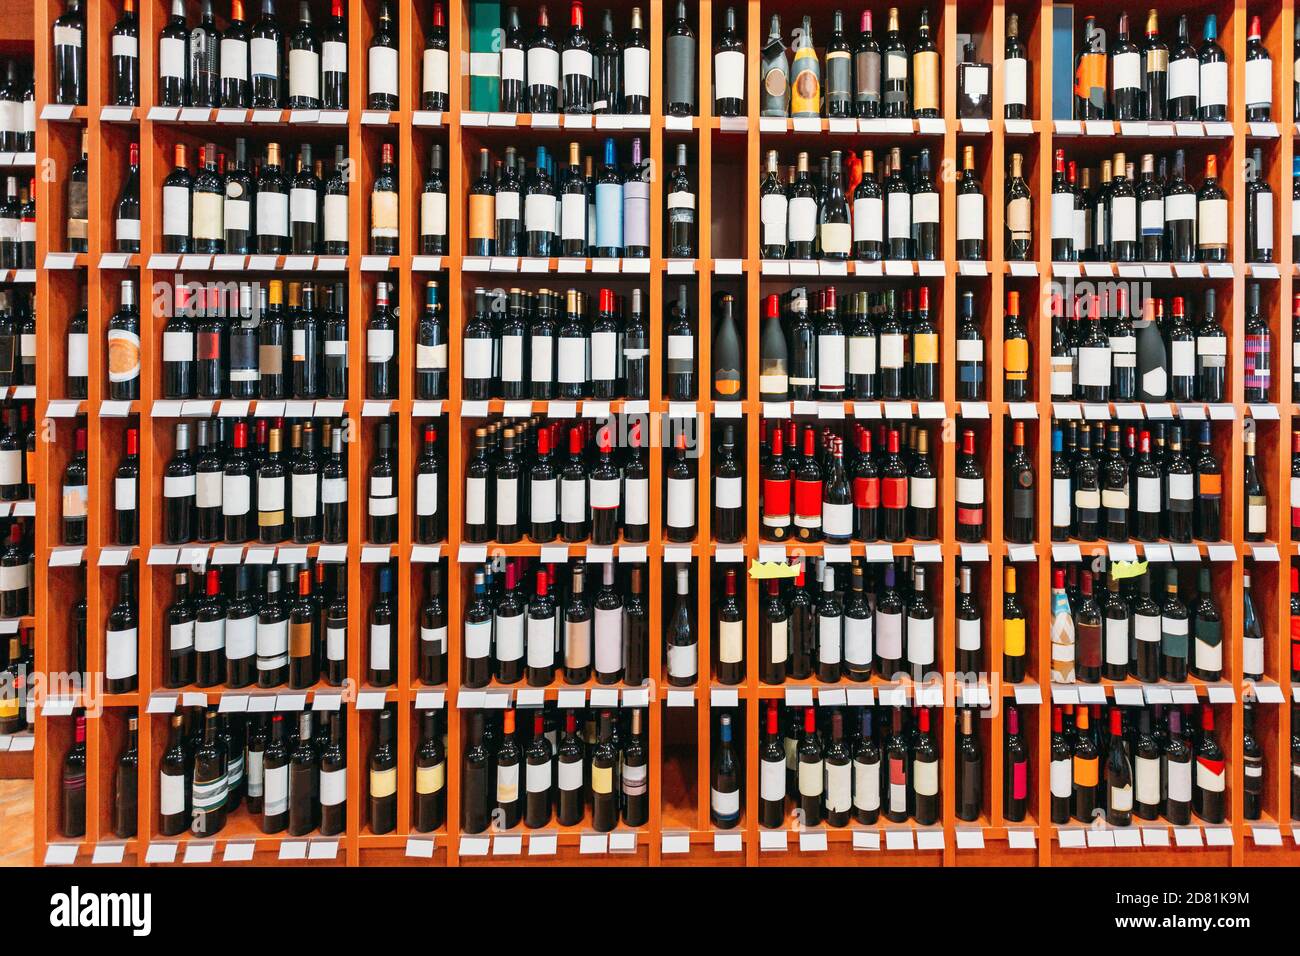 Vitrine Mit Weinflaschen Im Weinladen. Wand Mit Alkoholischen Getränken Weinflaschen Auf Regalen Stockfoto